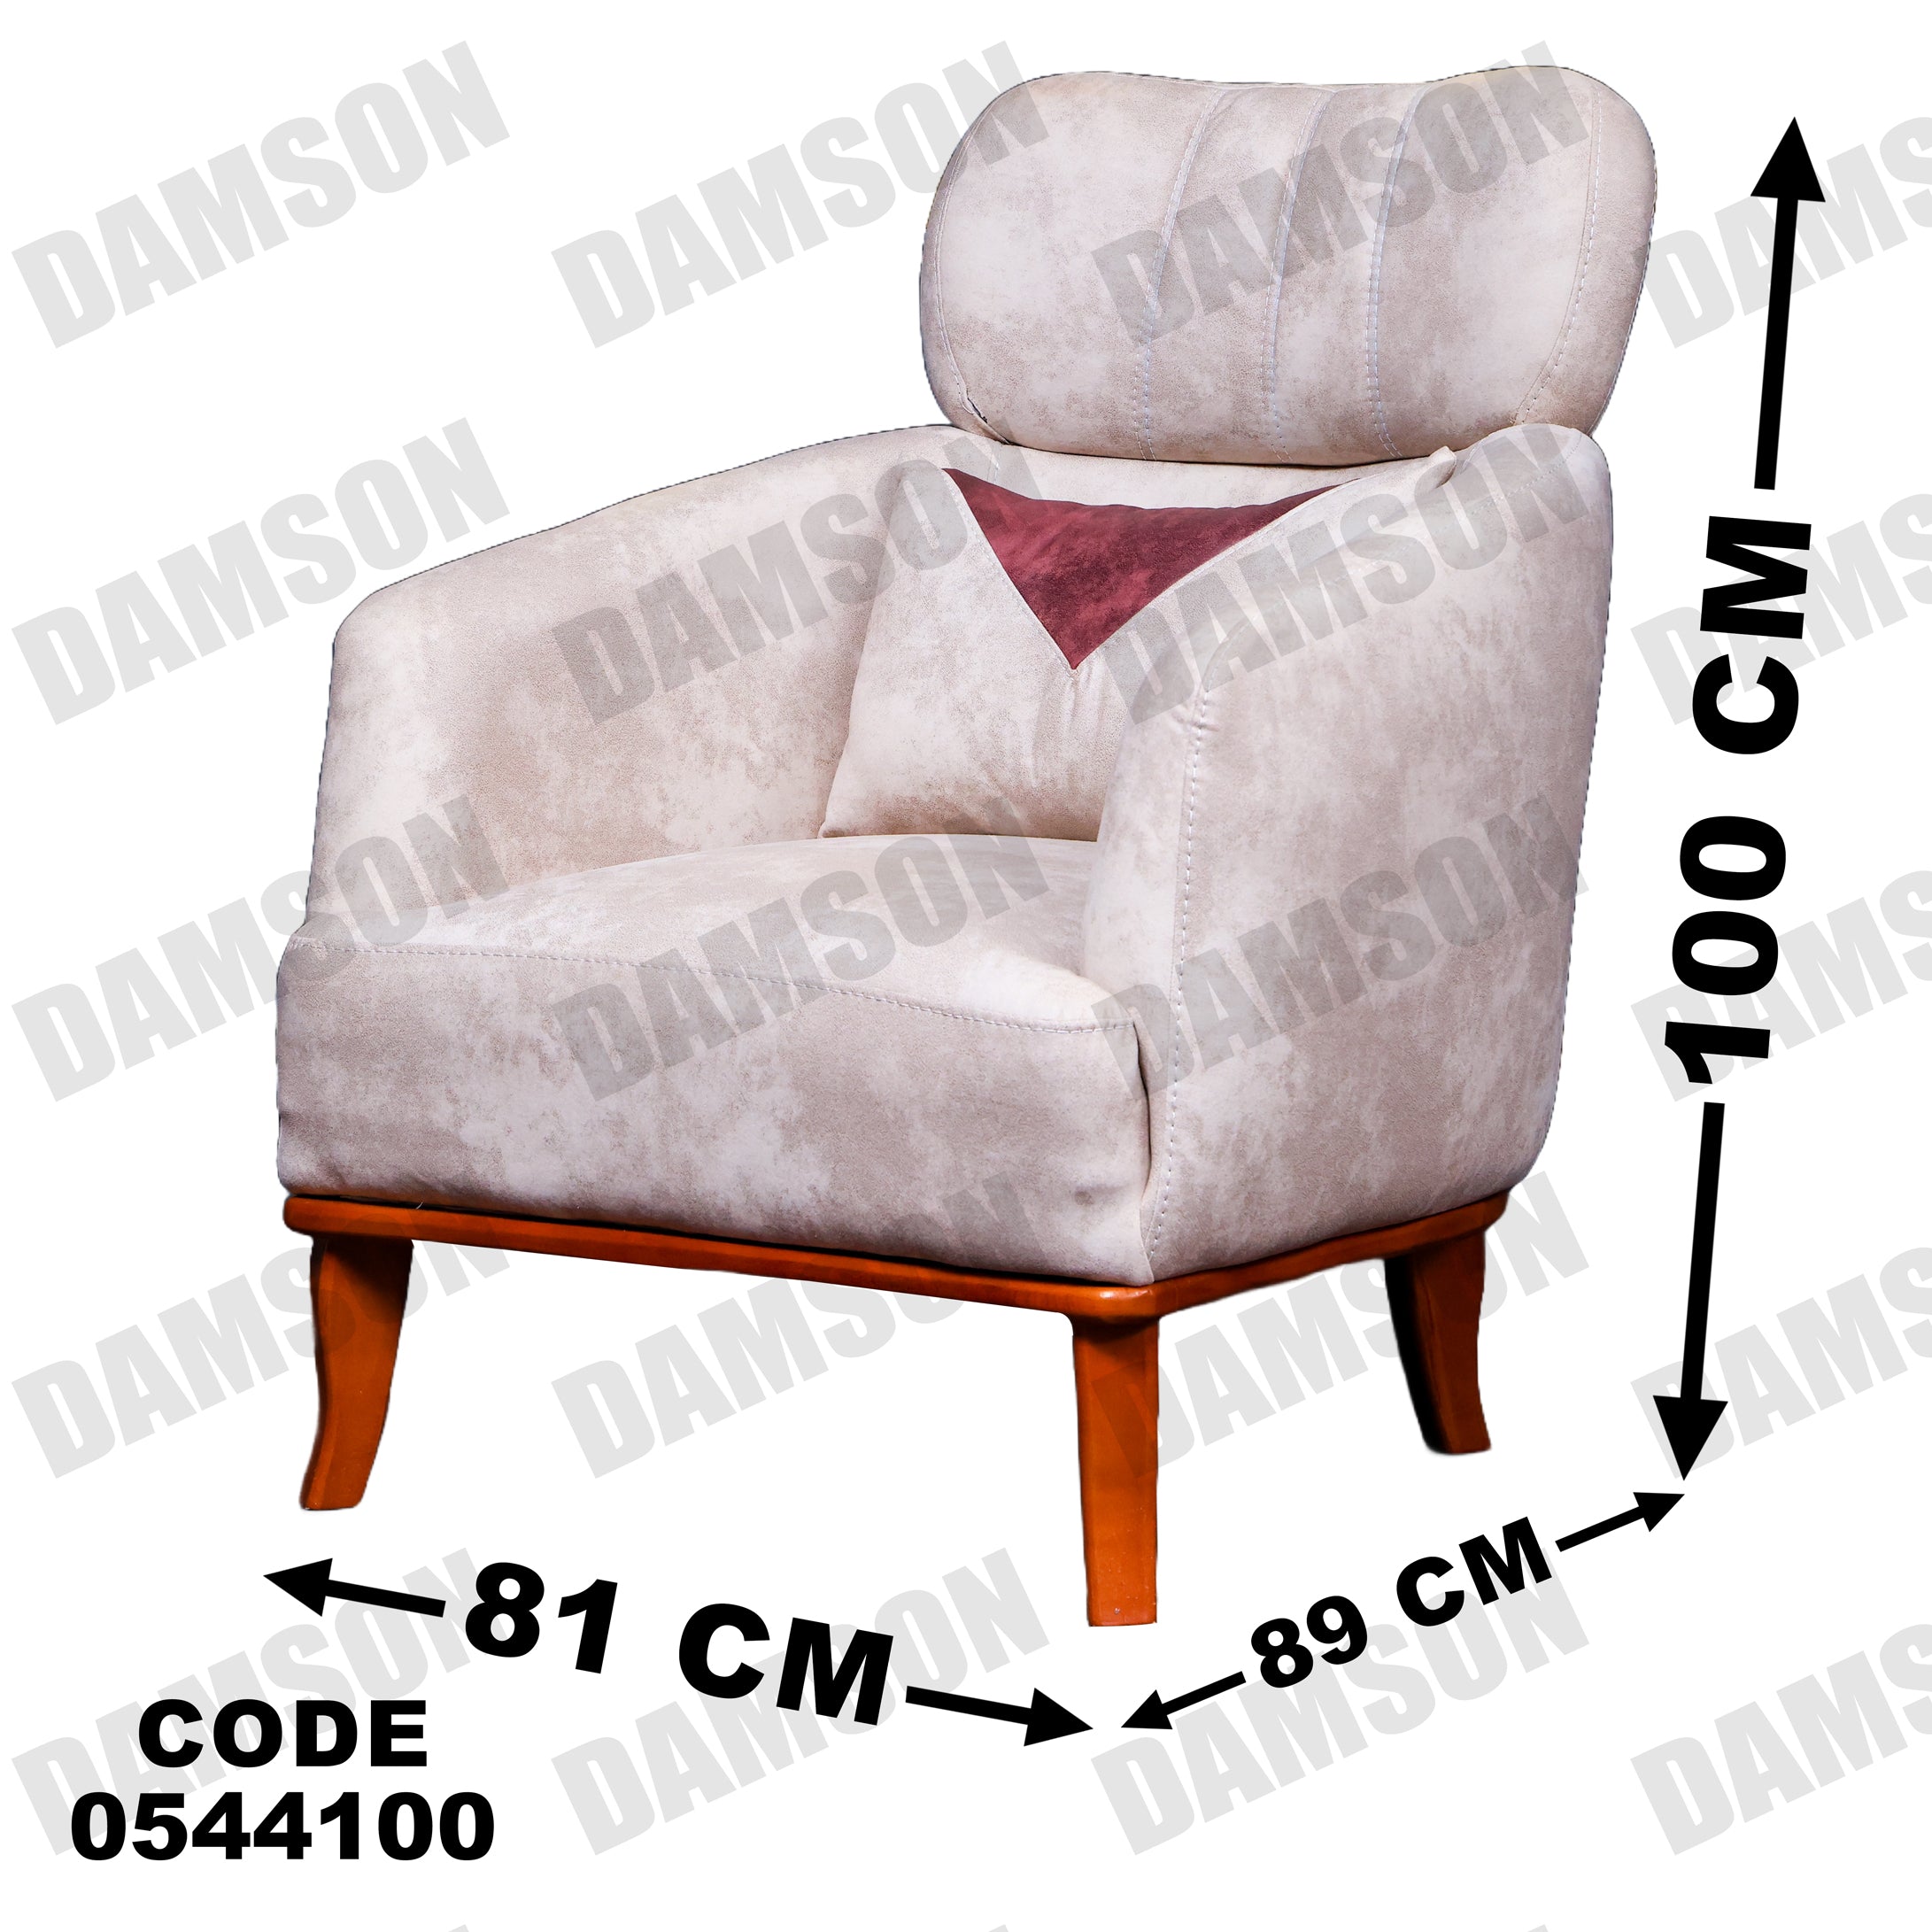 فوتية 2-441 - Damson Furnitureفوتية 2-441